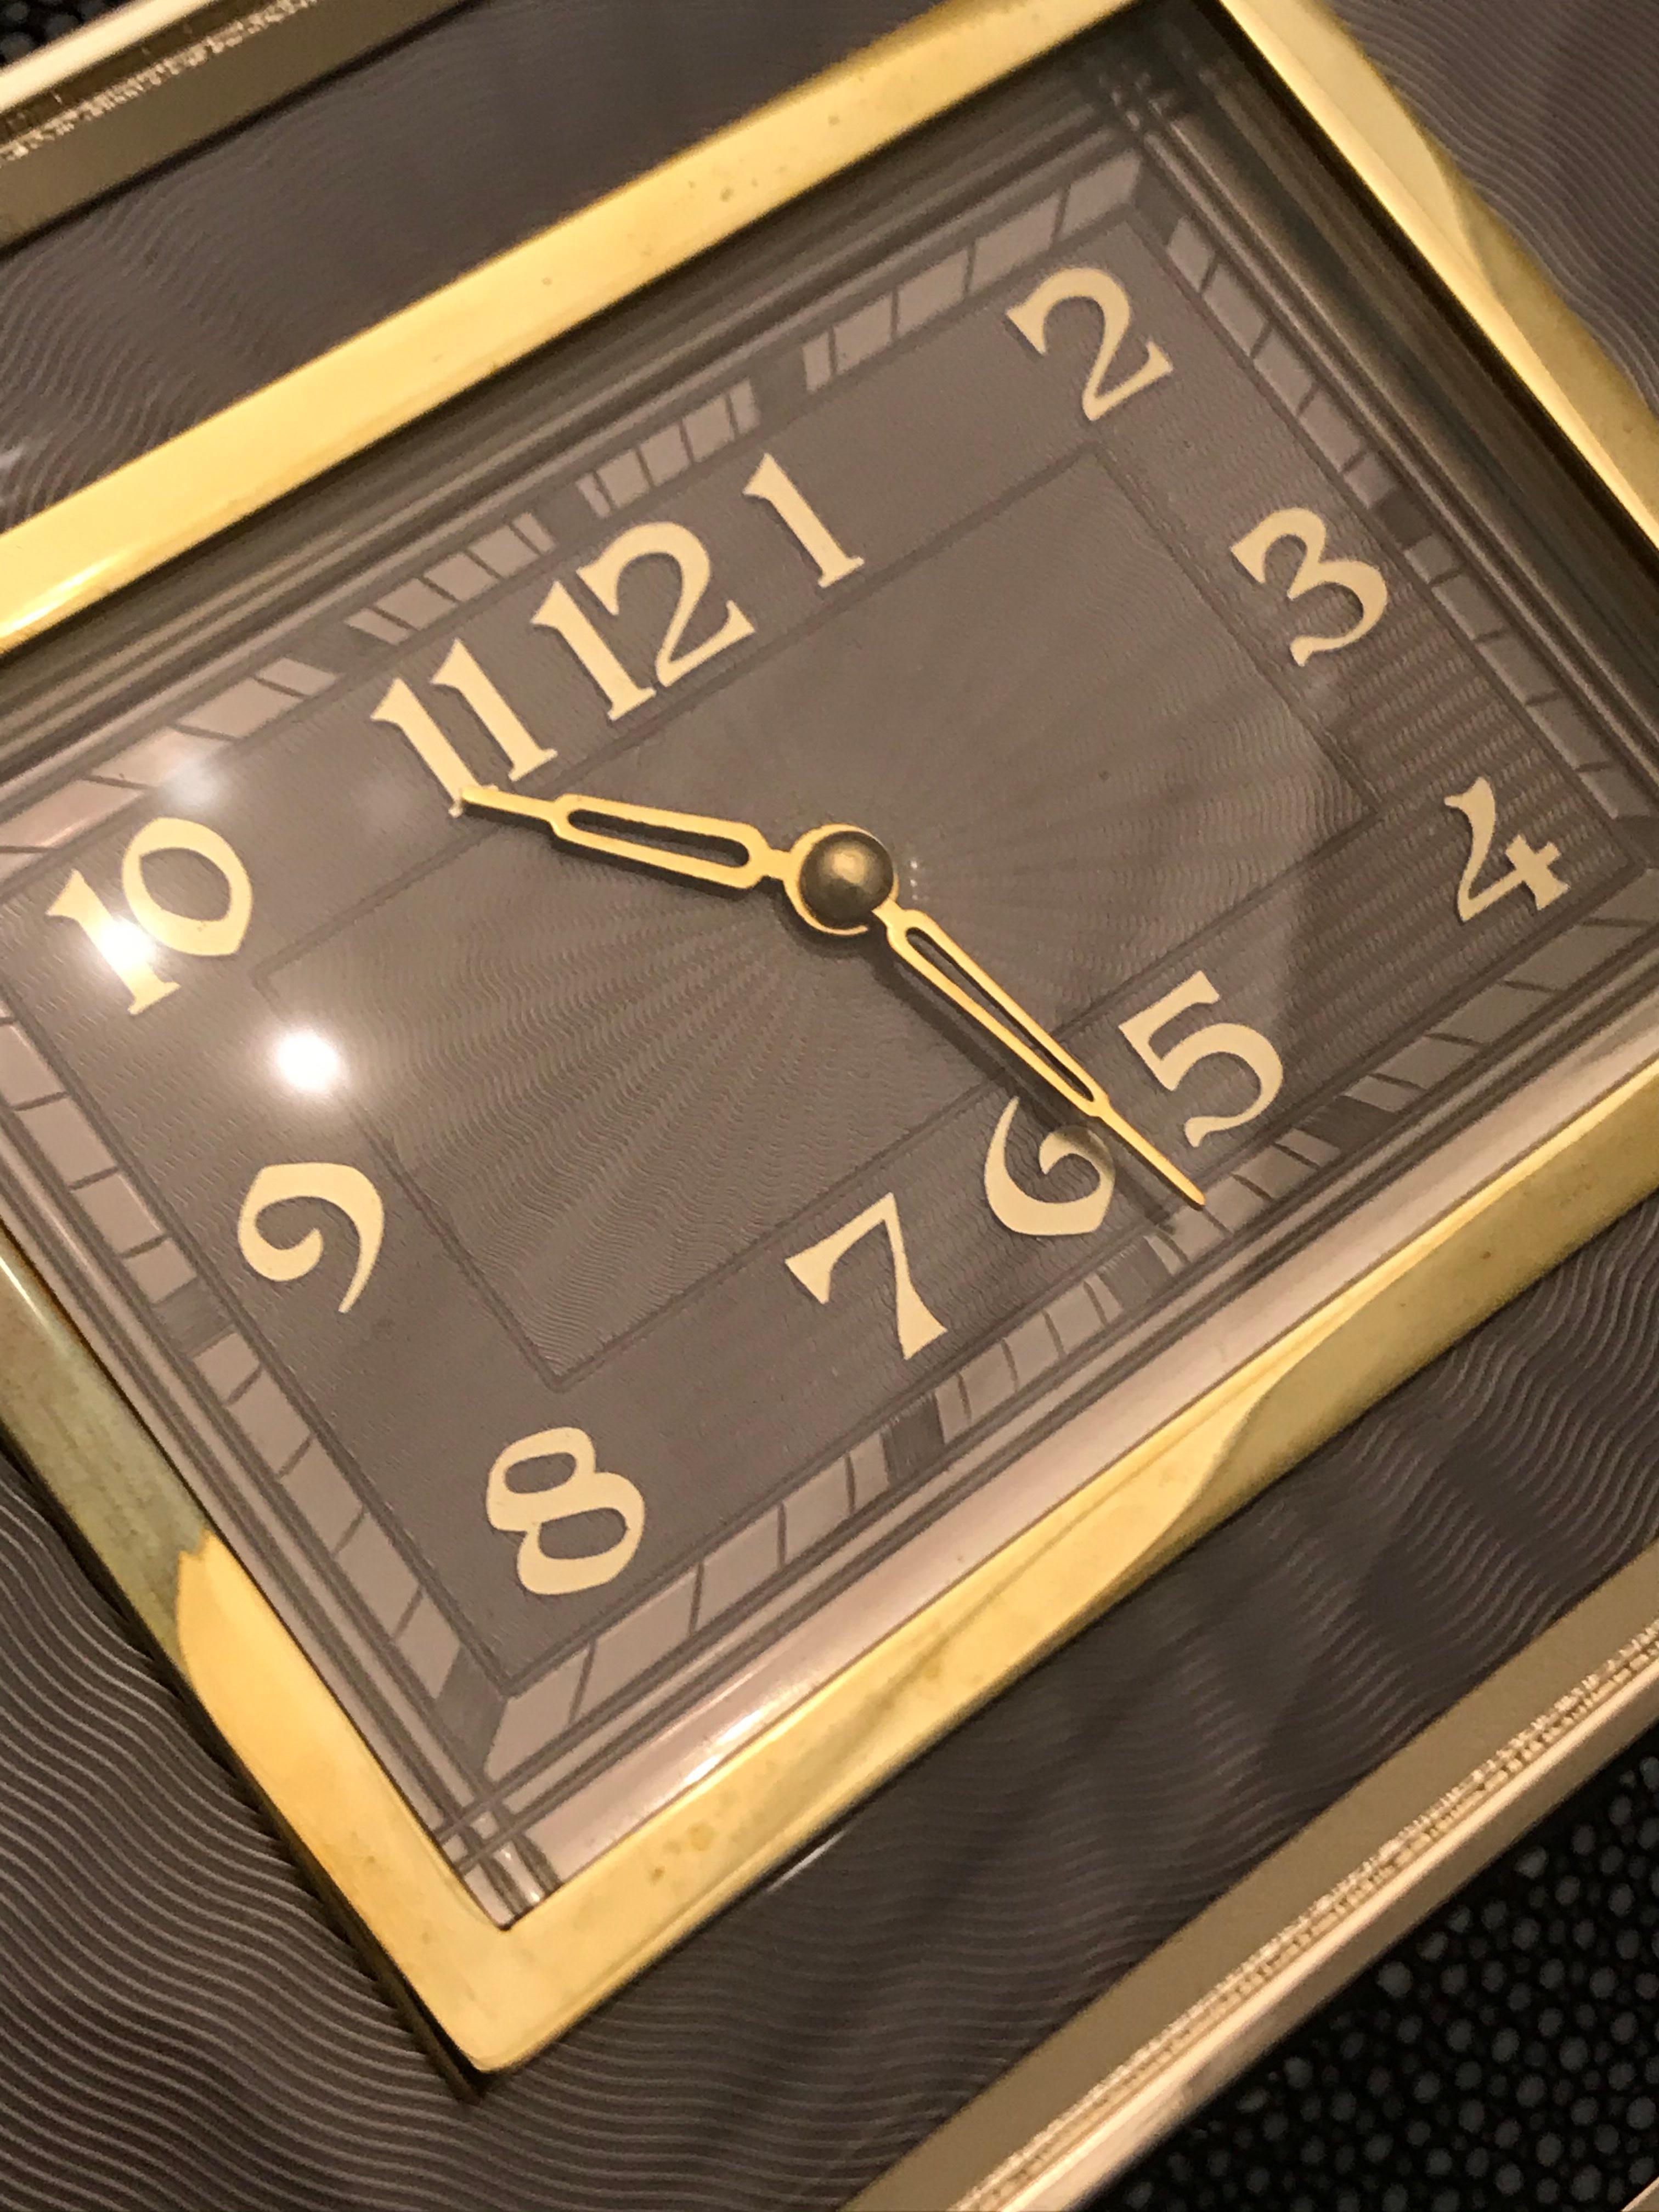 Rare pochette Anya Hindmarch Duke Clock de la marque éponyme. Sac de soirée de style boîte à cigarettes, principalement en galuchat, avec des bords inclinés et biseautés. Forme rectangulaire structurée avec émail guilloché dans les tons de cloches